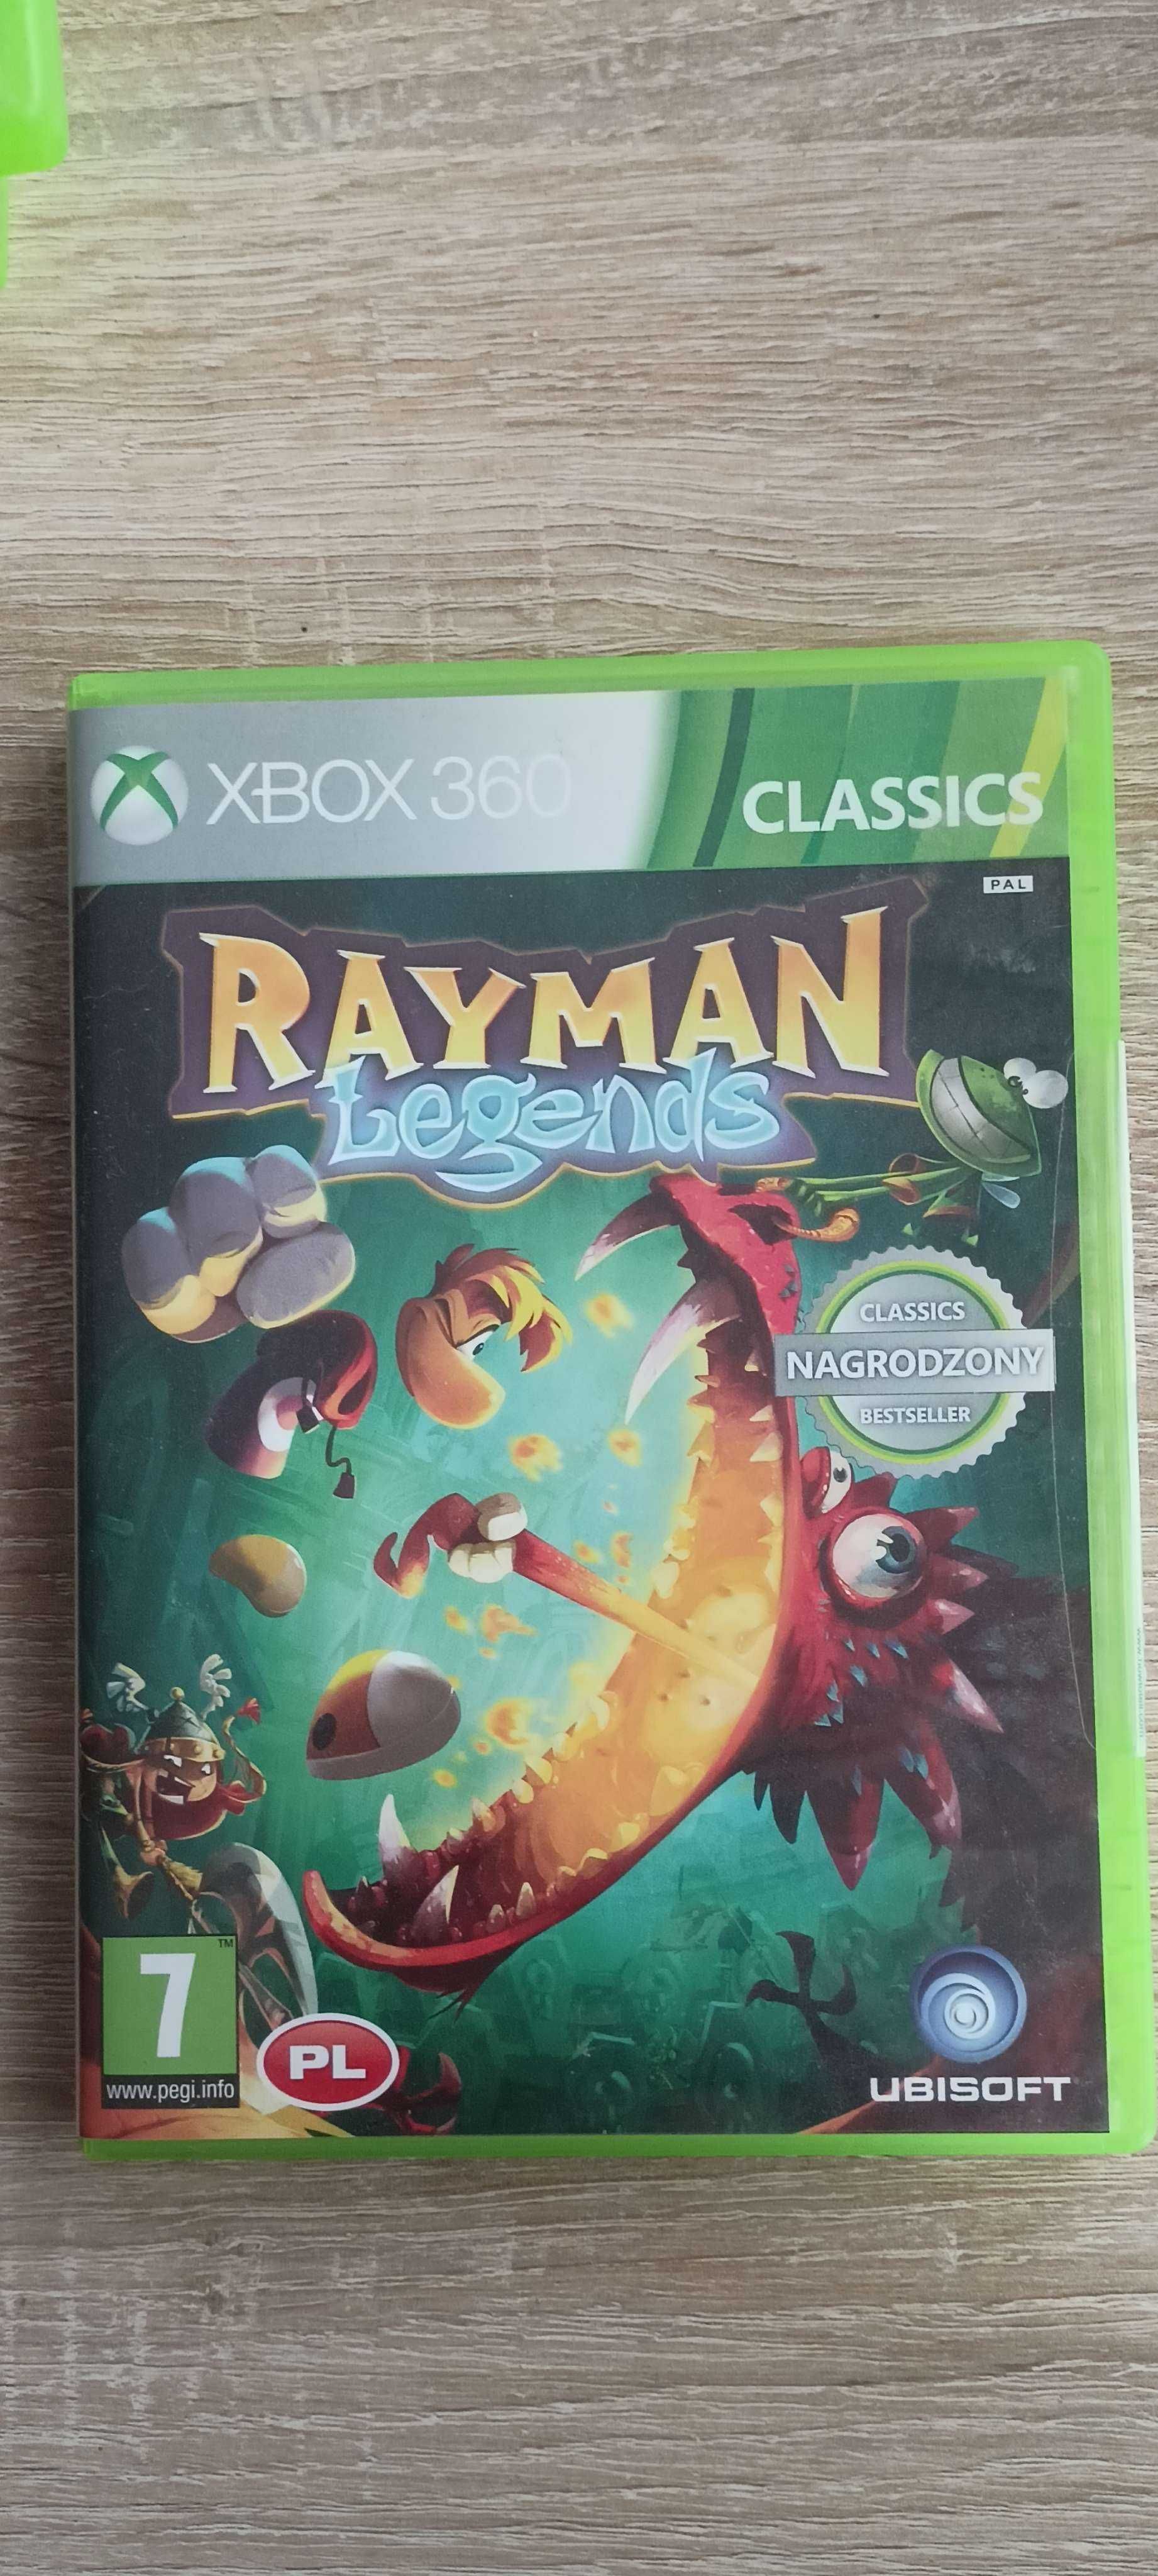 Gry XBOX 360 Gta, Rayman, Minecraft. Pojedyncze egzemplarze i zestaw